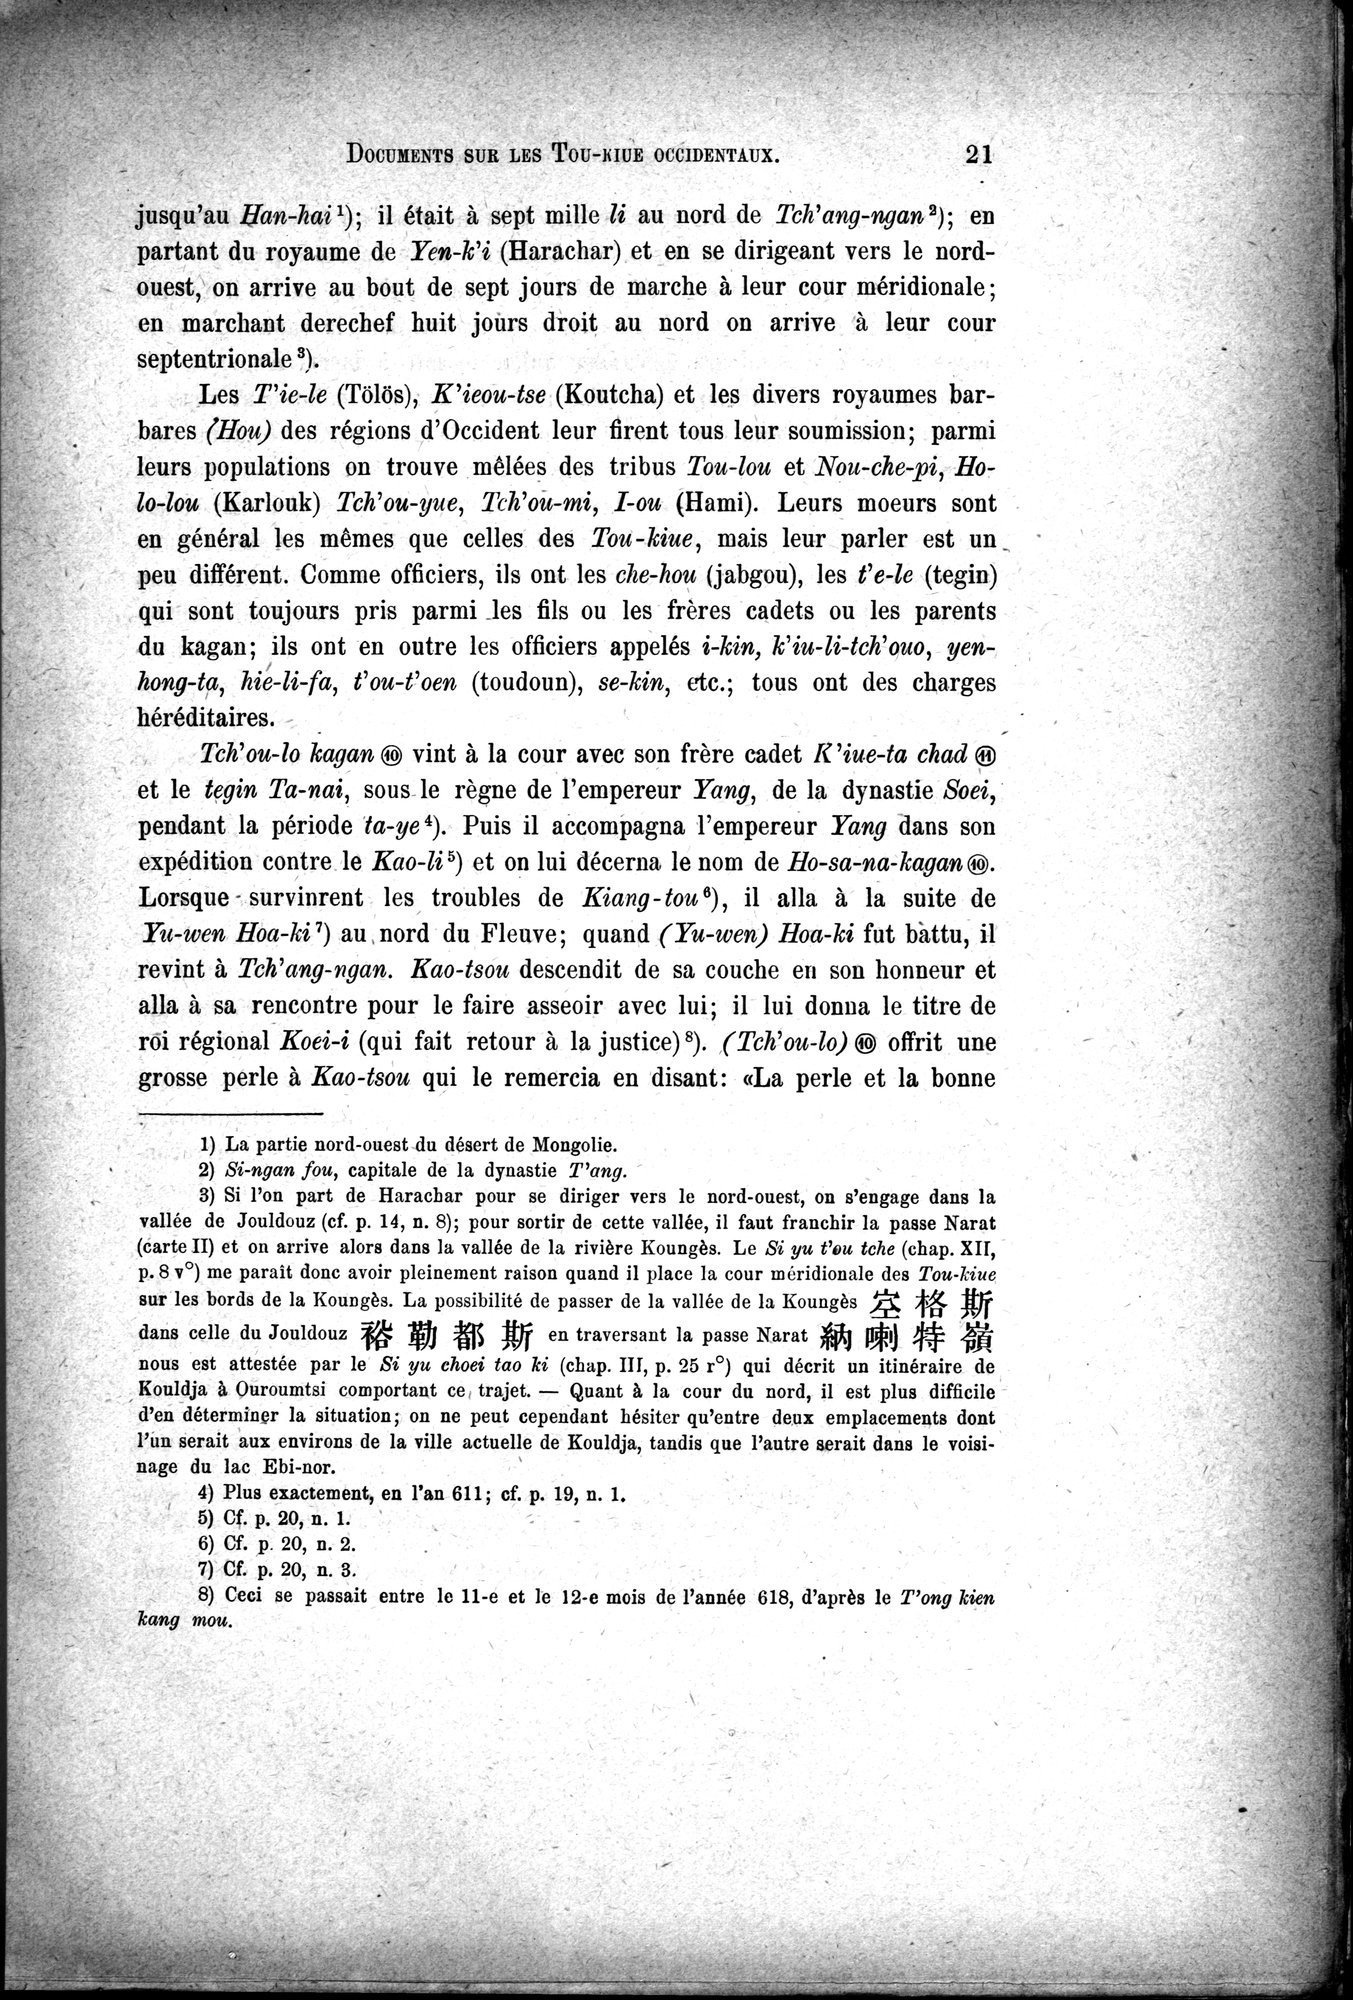 Documents sur les Tou-kiue (Turcs) occidentaux : vol.1 / Page 31 (Grayscale High Resolution Image)